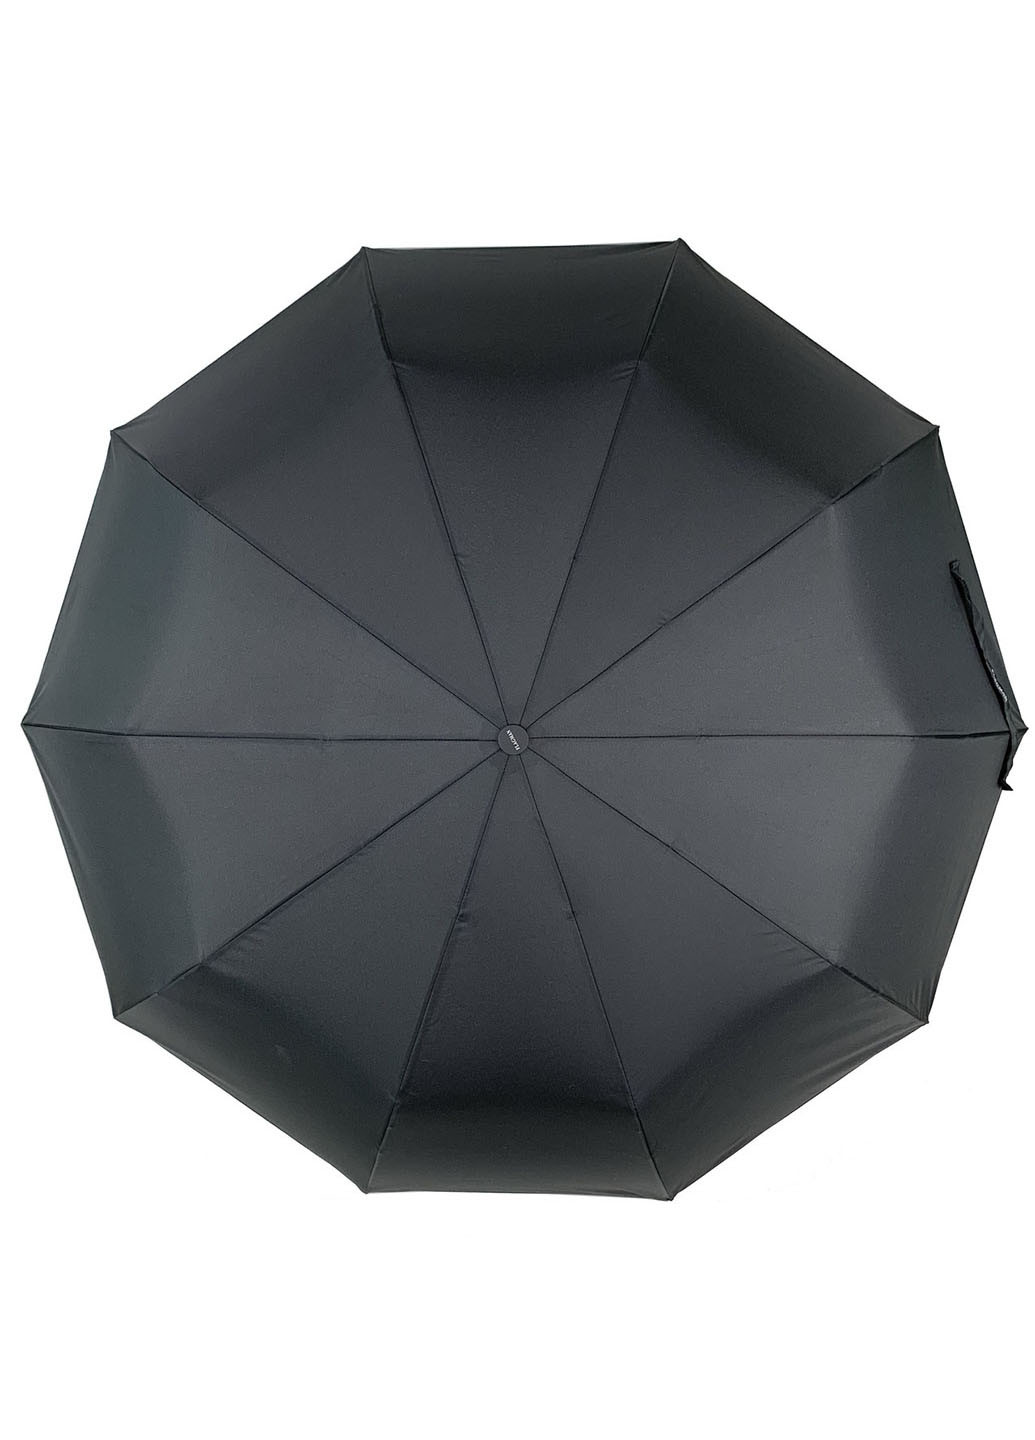 Зонт Flagman 525-1 складной чёрный